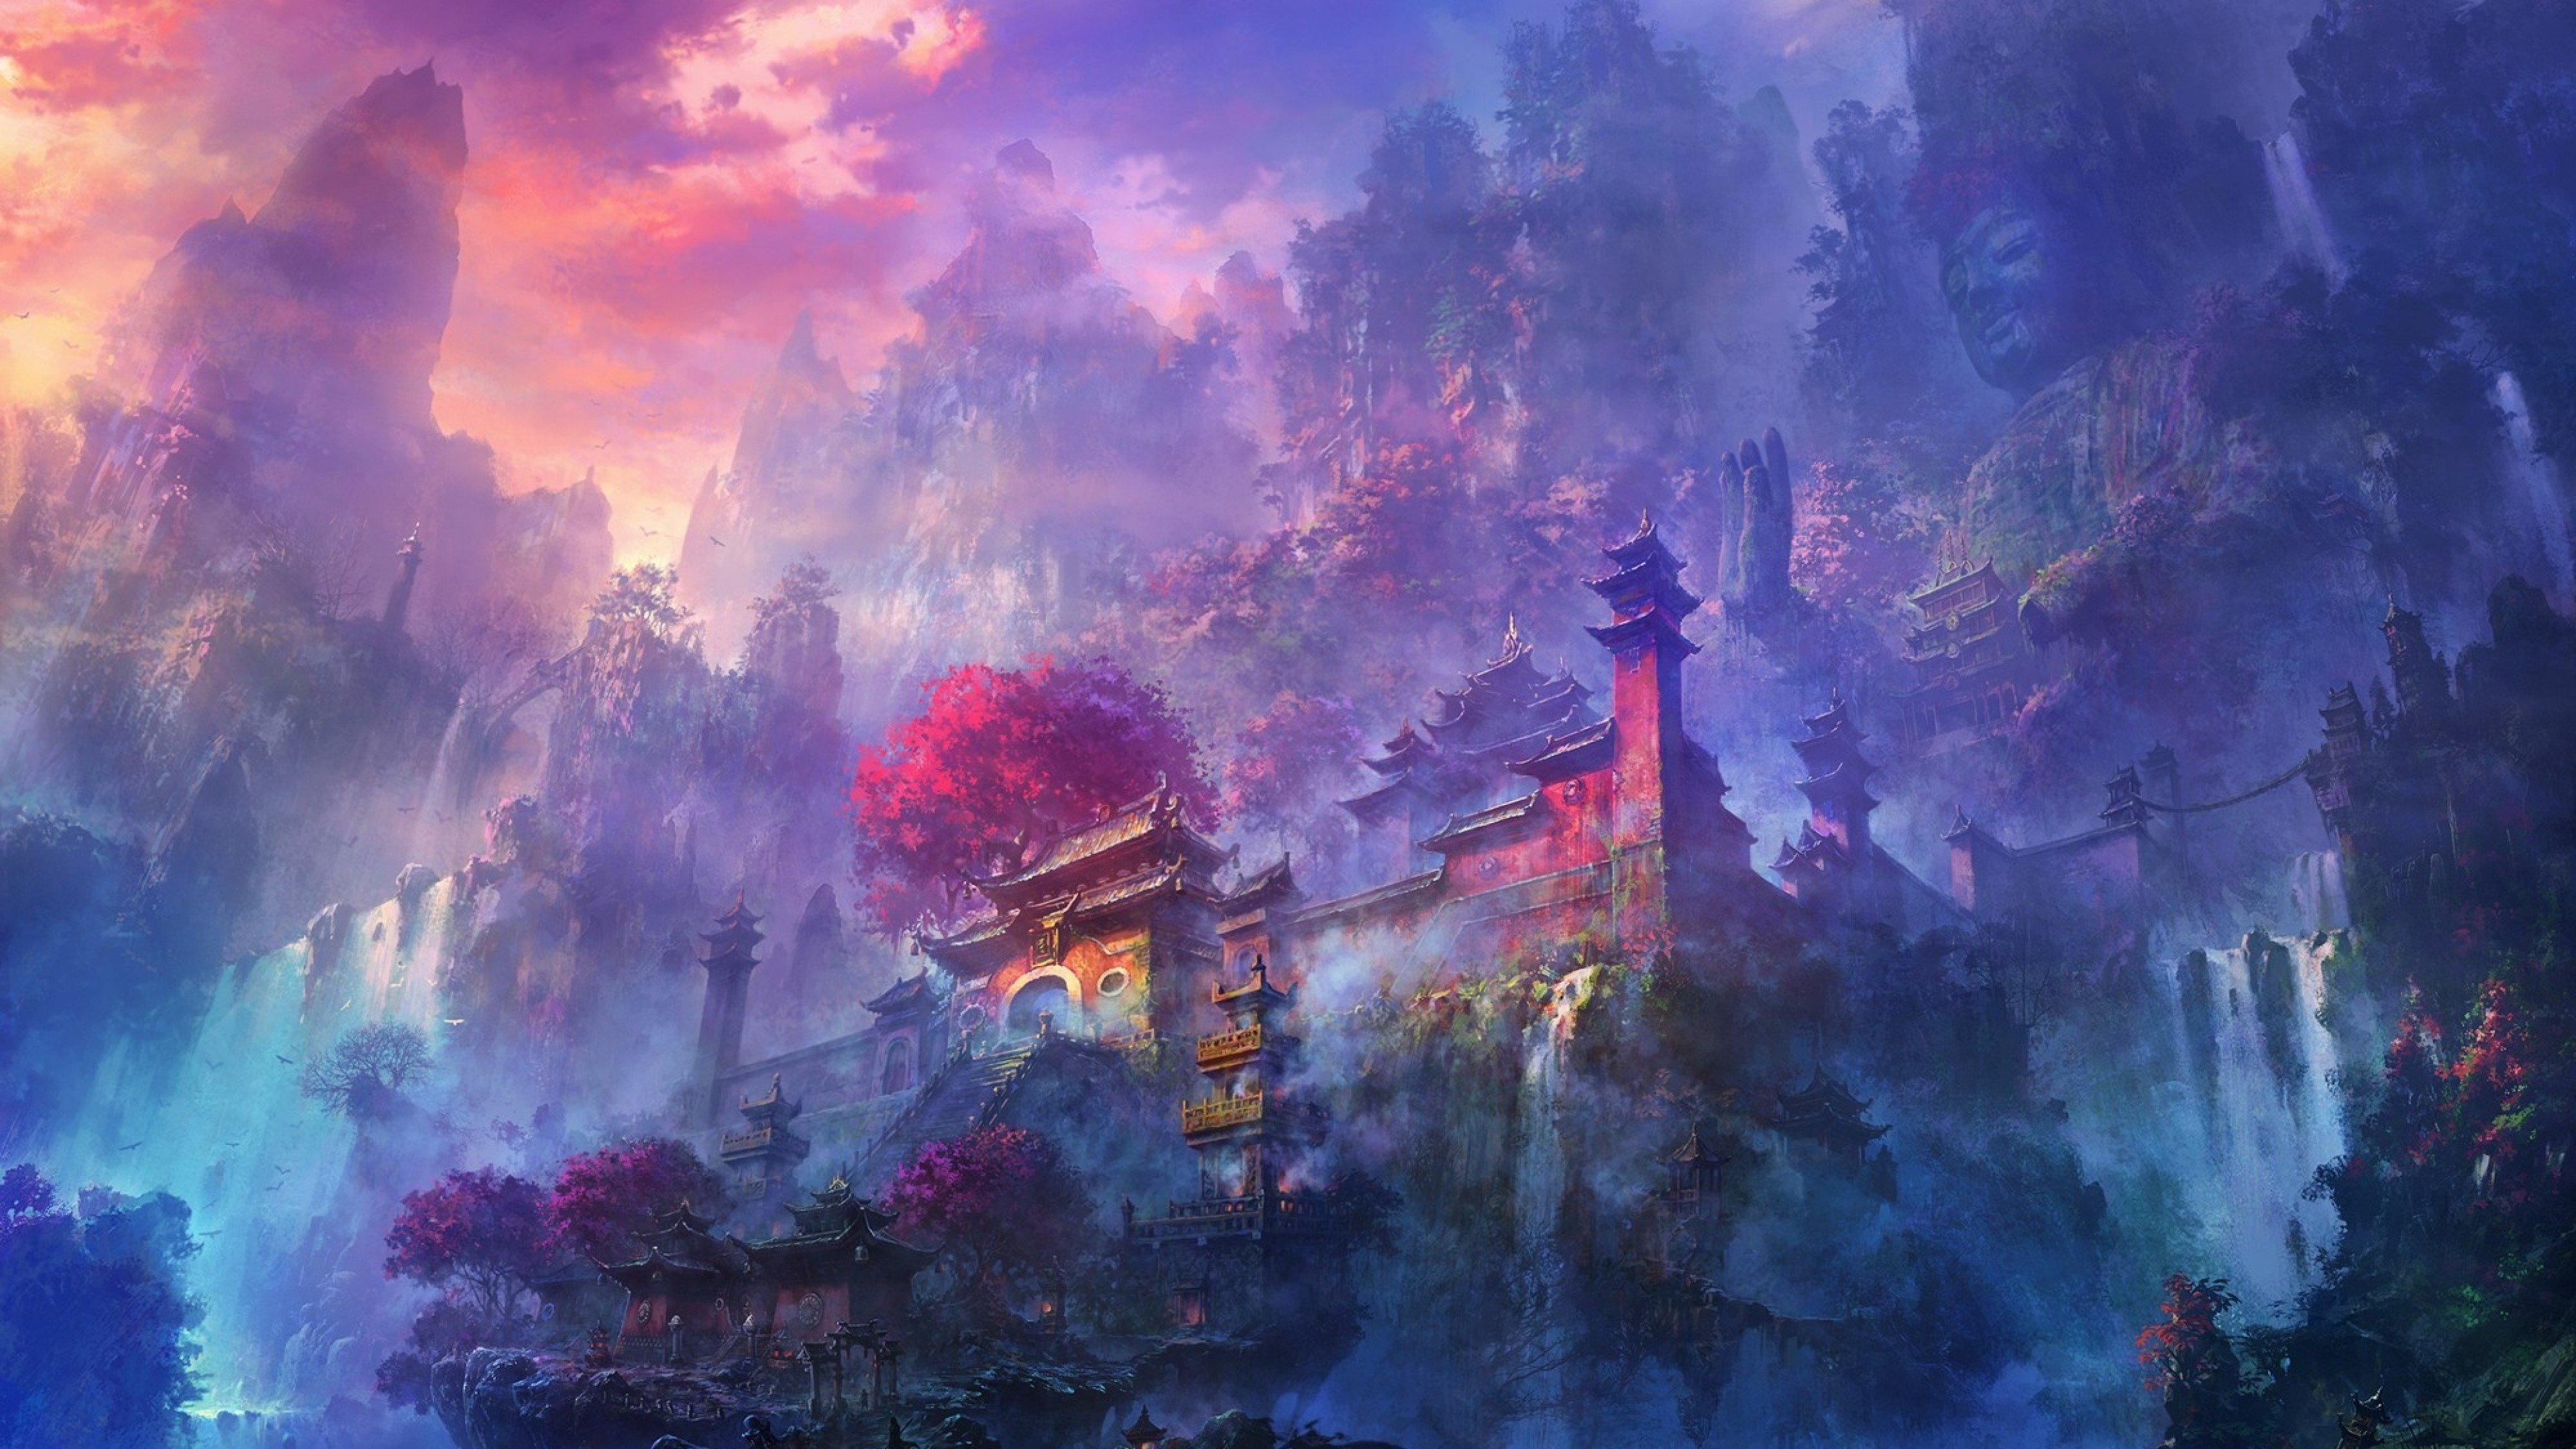 Shaolin Temple by Shuxing Li. 4K wallpaper